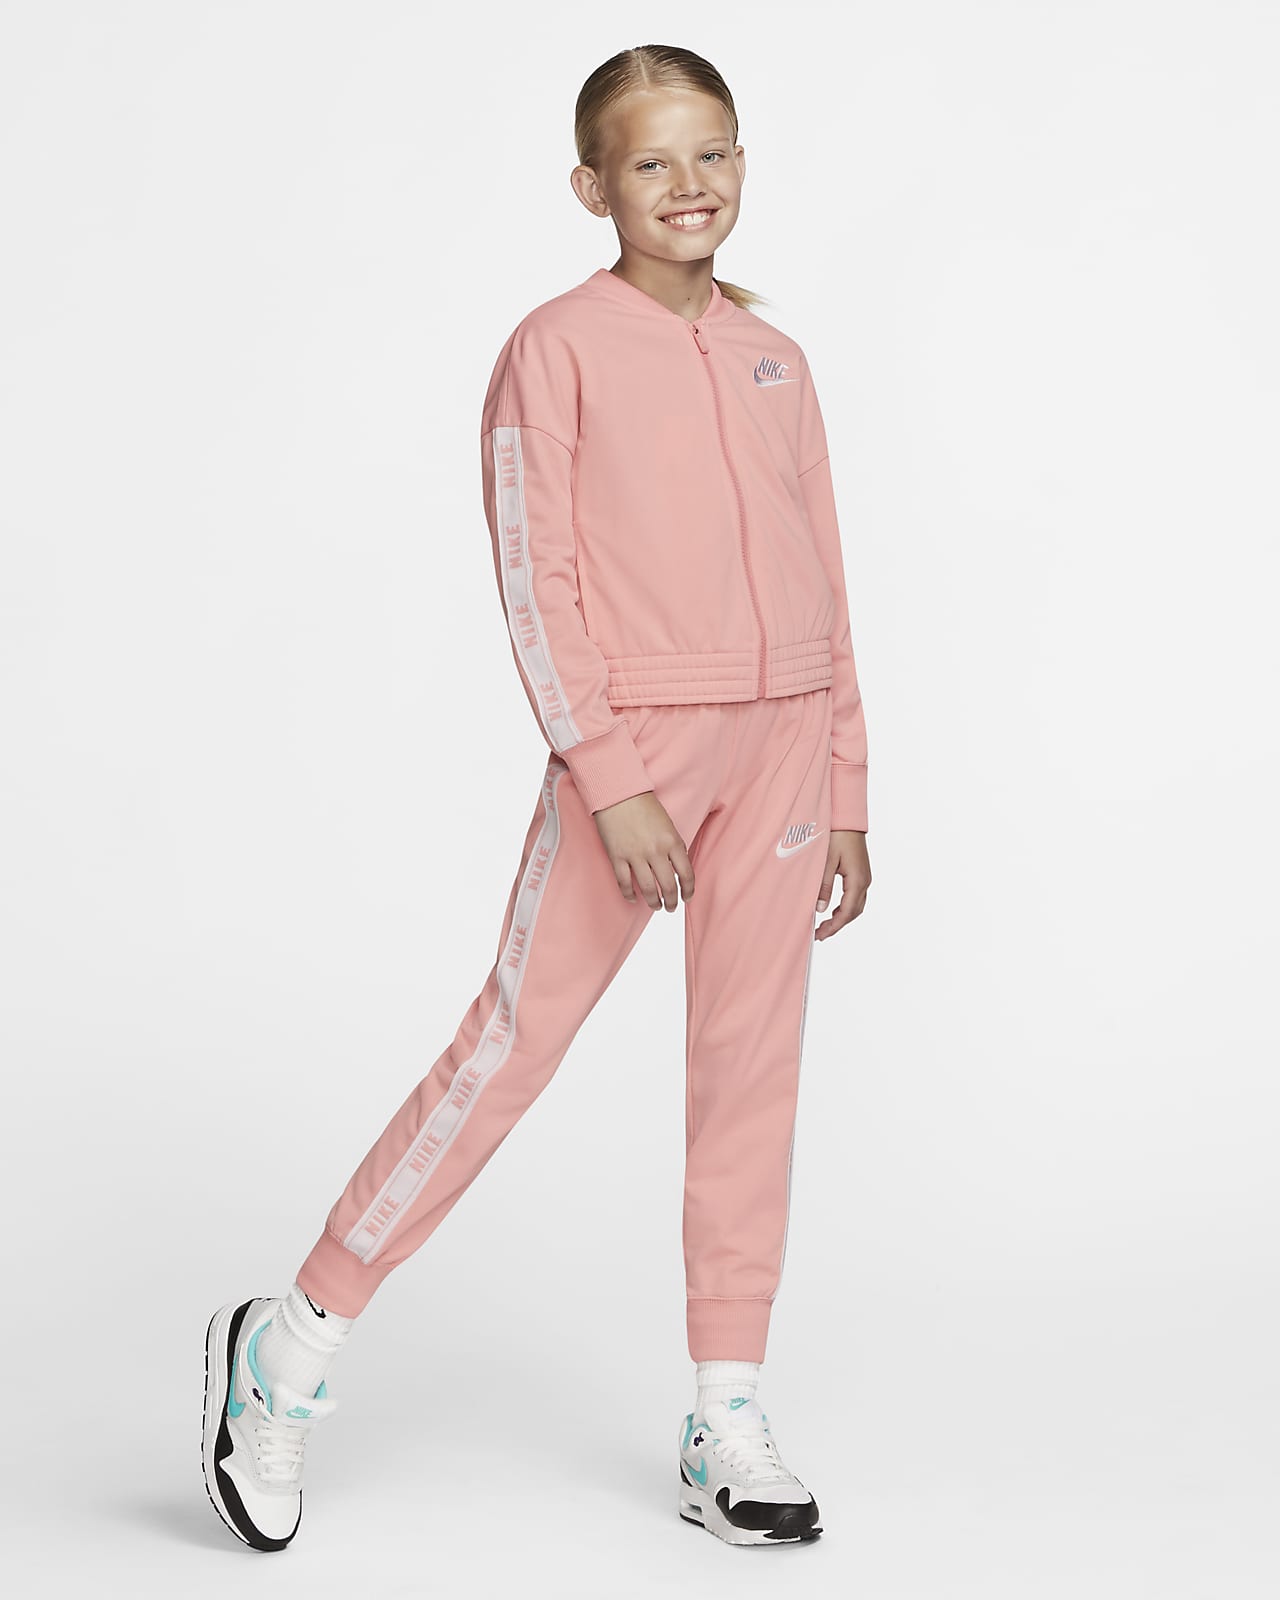 Tuta Nike Sportswear - Bambina/Ragazza